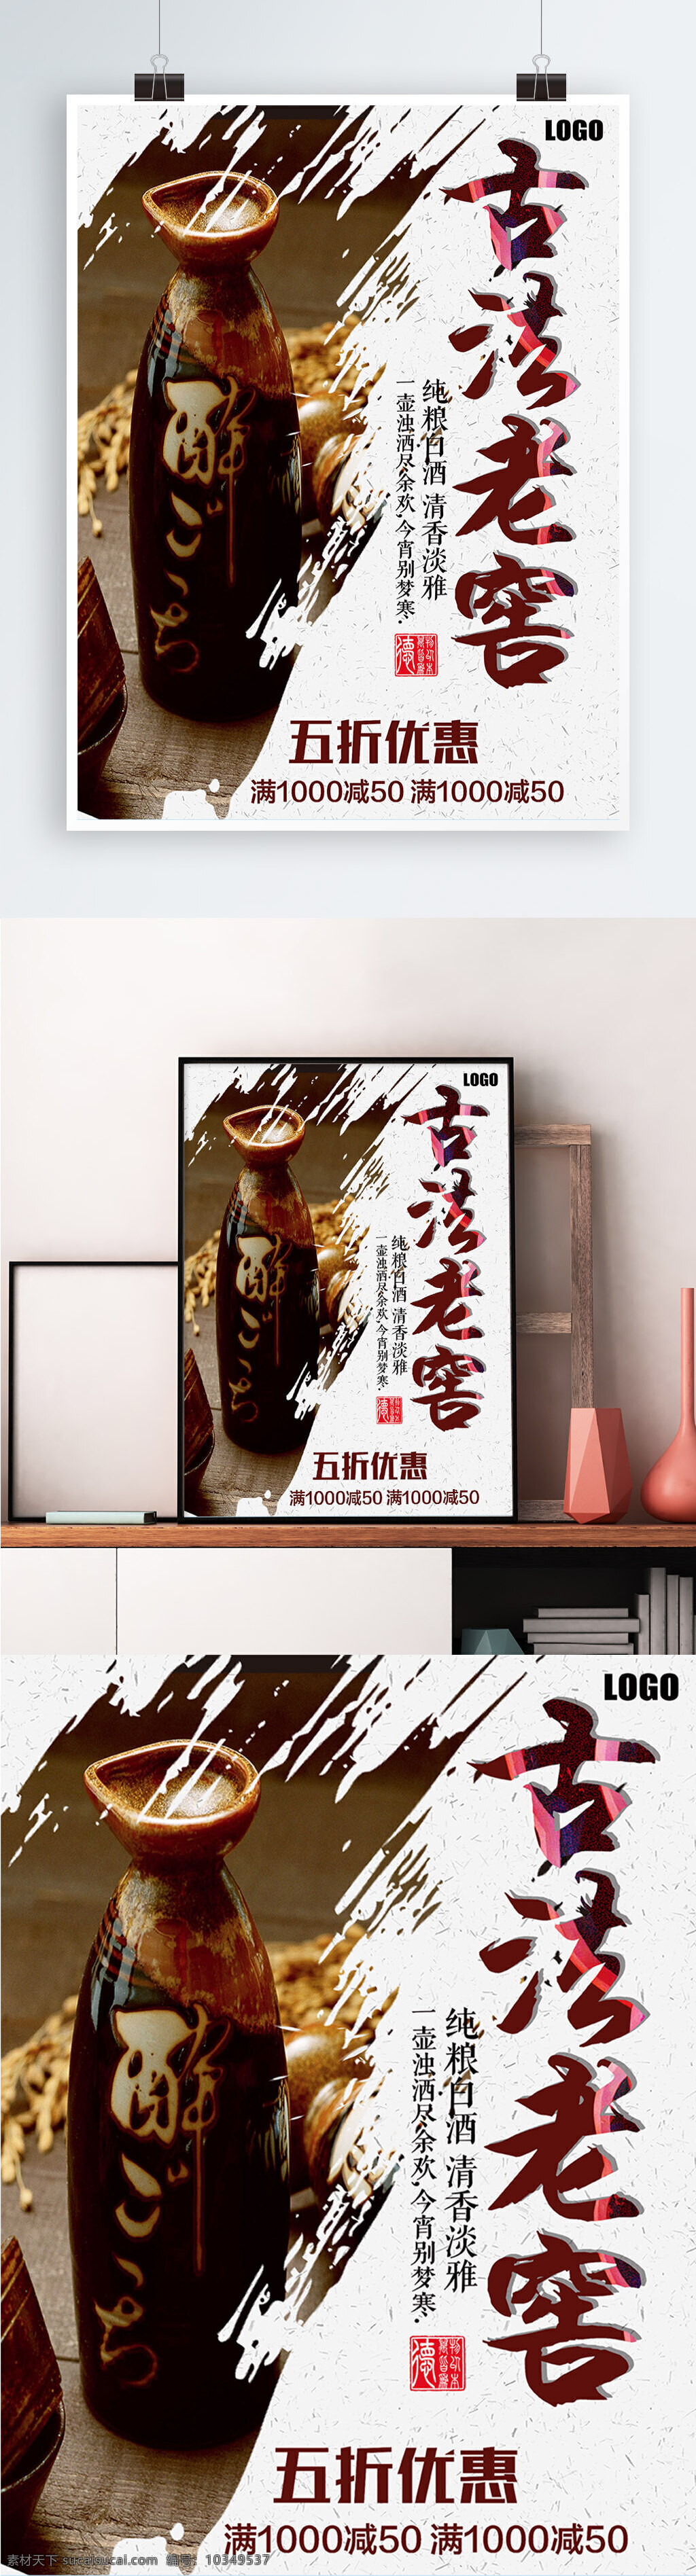 白色 背景 简约 中国 风 古法 老窖 宣传海报 白酒 古法老窖 酒厂 中国风 美酒 促销